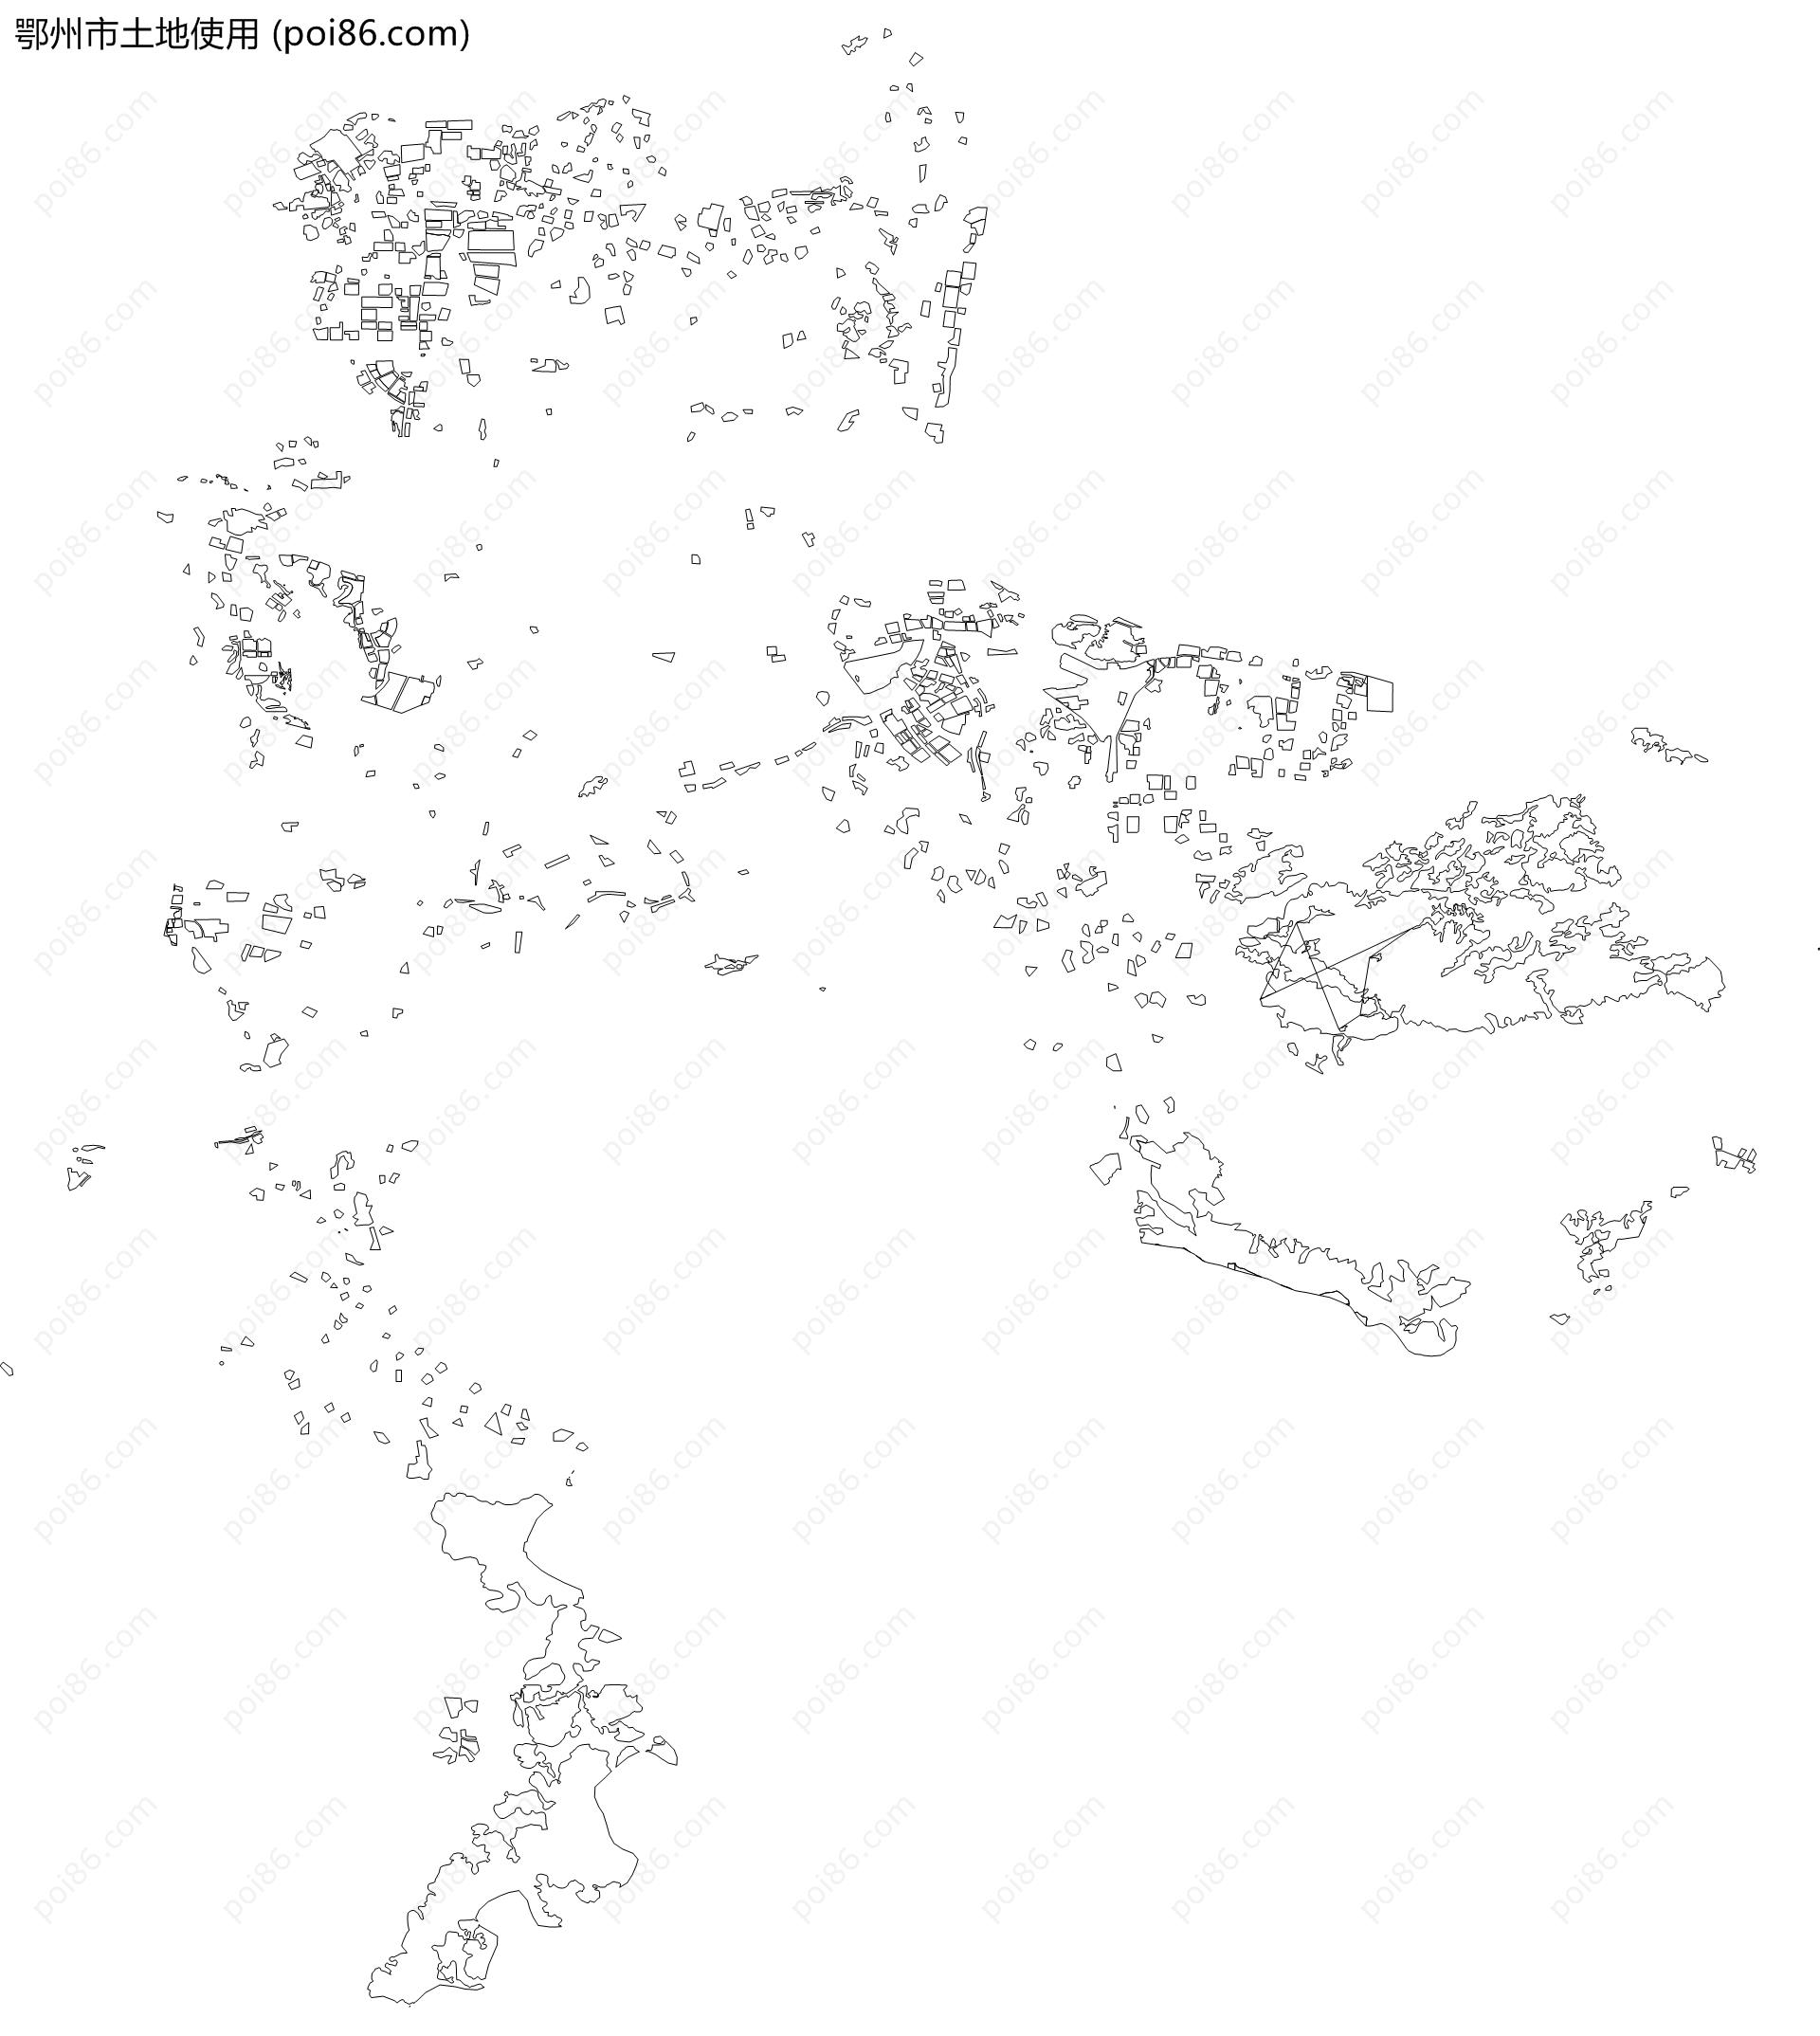 鄂州市土地使用地图